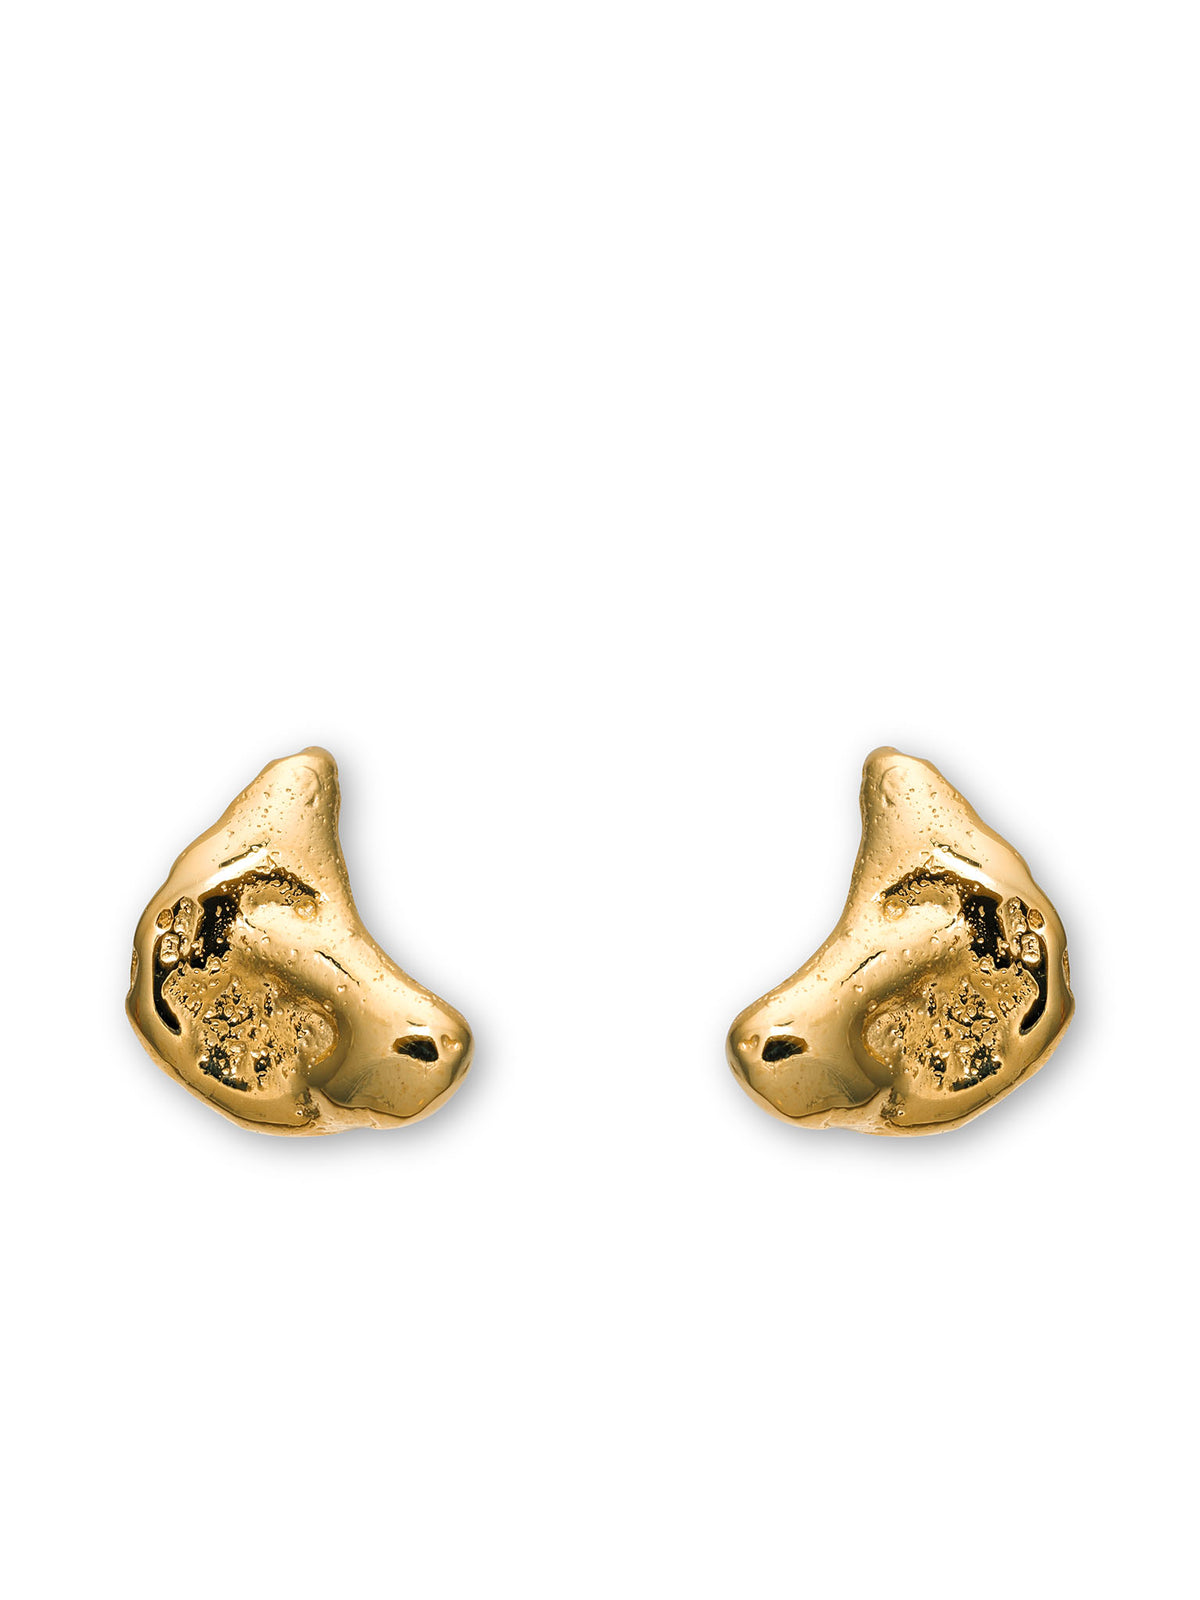 Talisman Half Moon Earrings 14 ct Gold